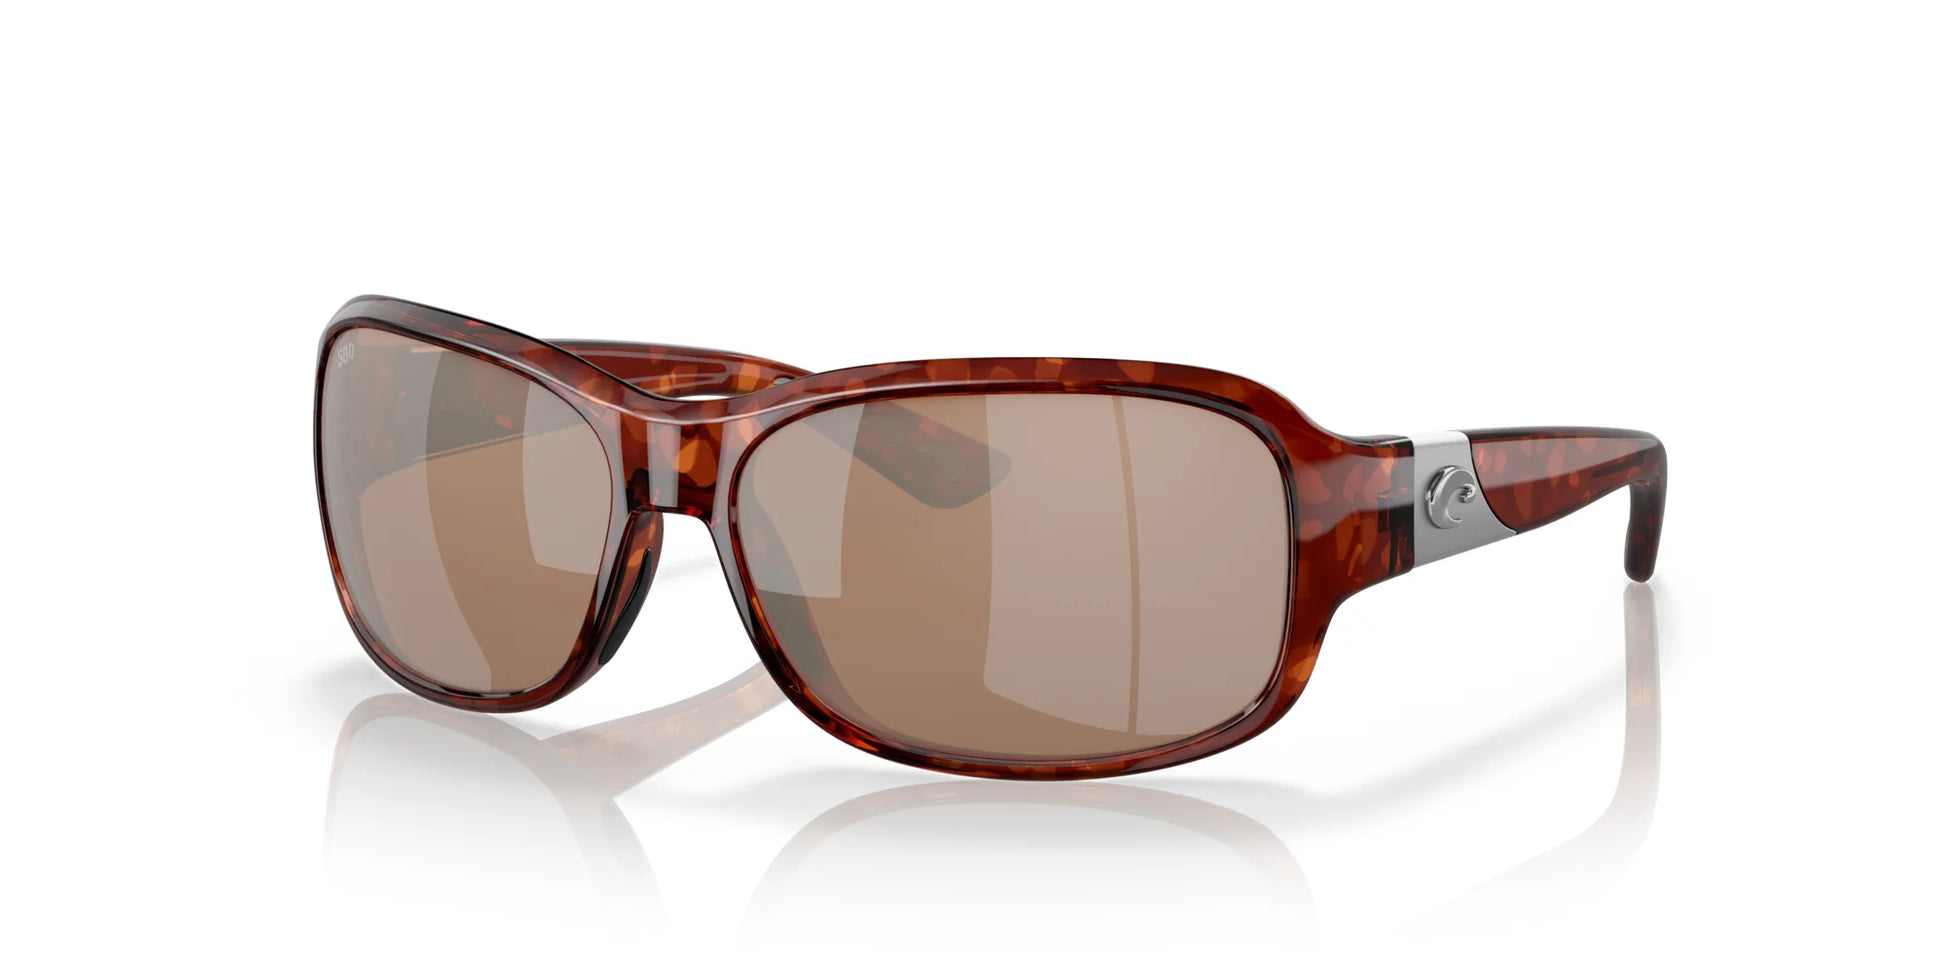 Costa INLET 6S9042 Sunglasses Tortoise / Copper Silver Mirror